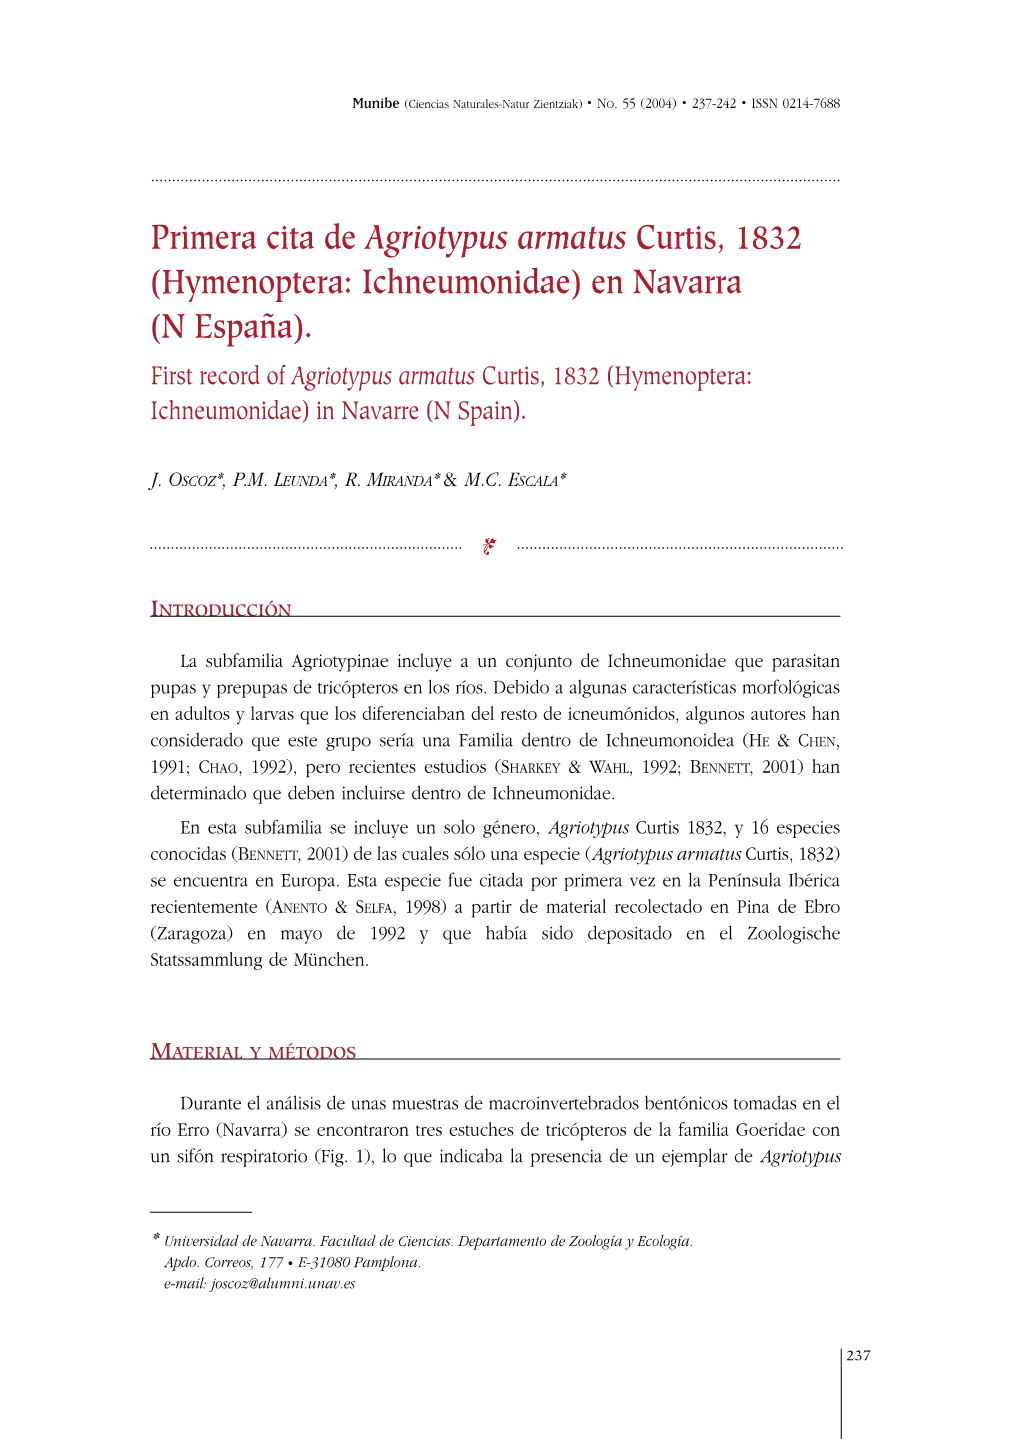 Primera Cita De Agriotypus Armatus Curtis, 1832 (Hymenoptera: Ichneumonidae) En Navarra (N España)